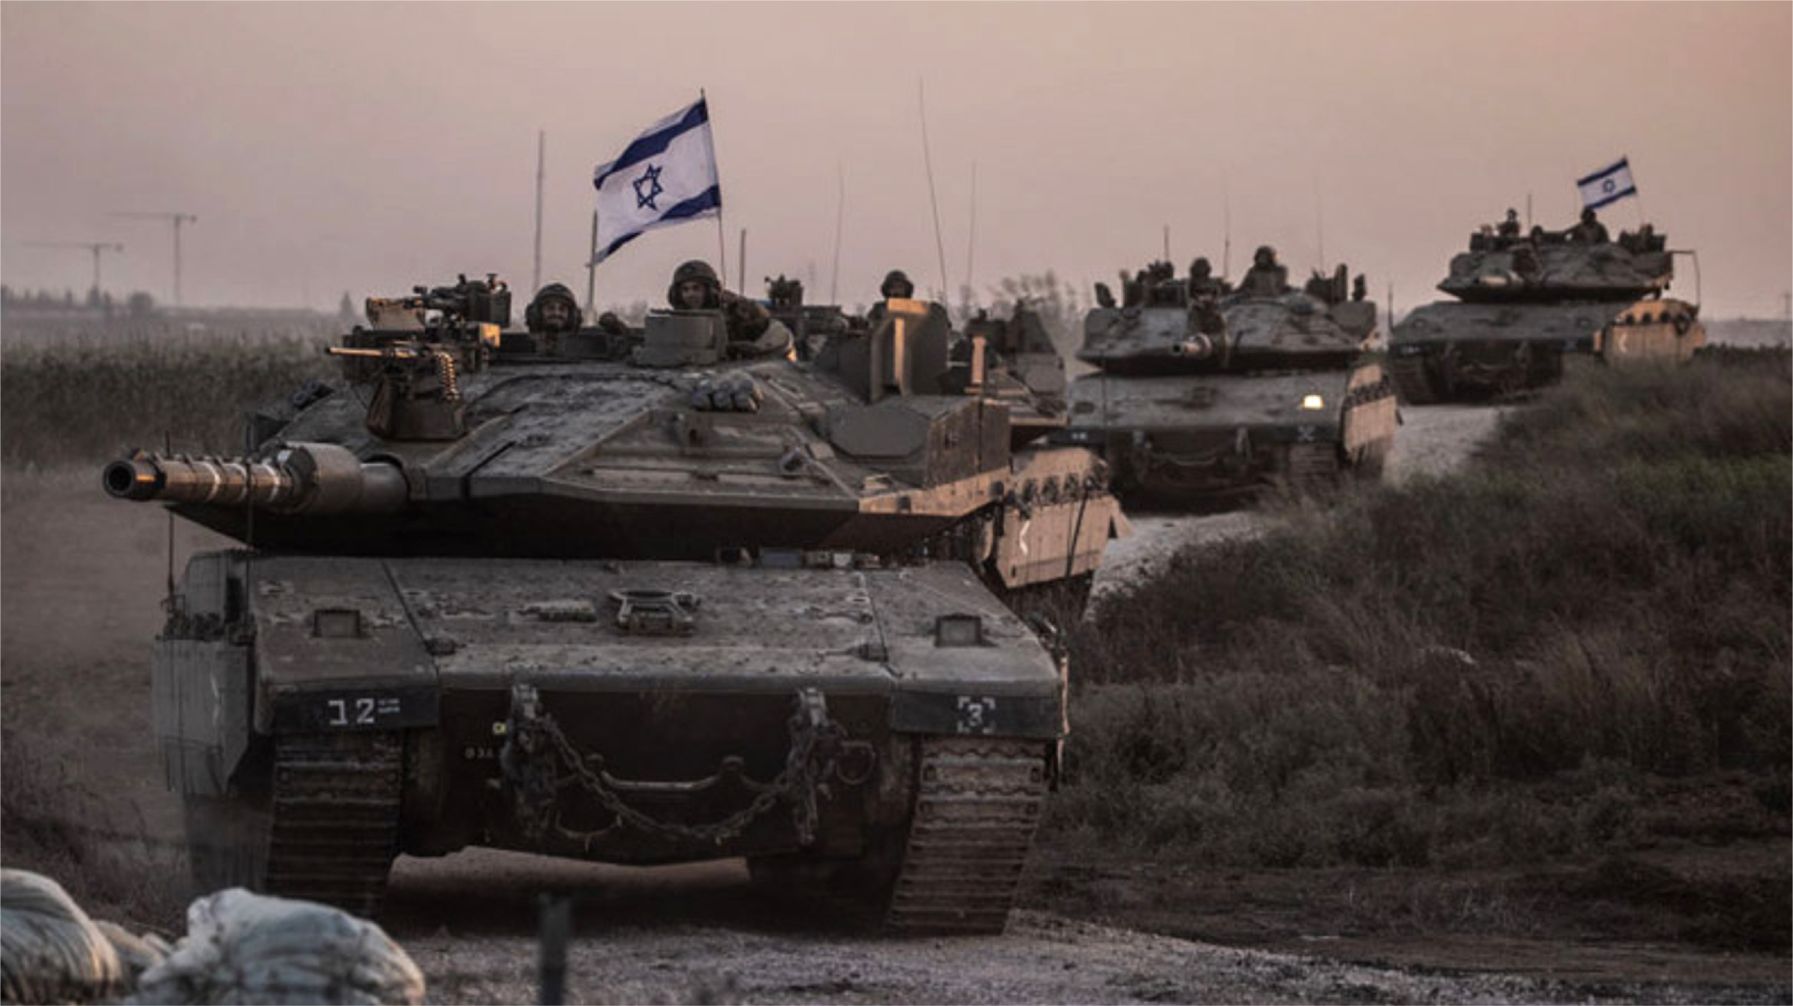 Správa o bombovom útoku! Izrael nariadil armáde, aby odstúpila počas útoku Hamasu